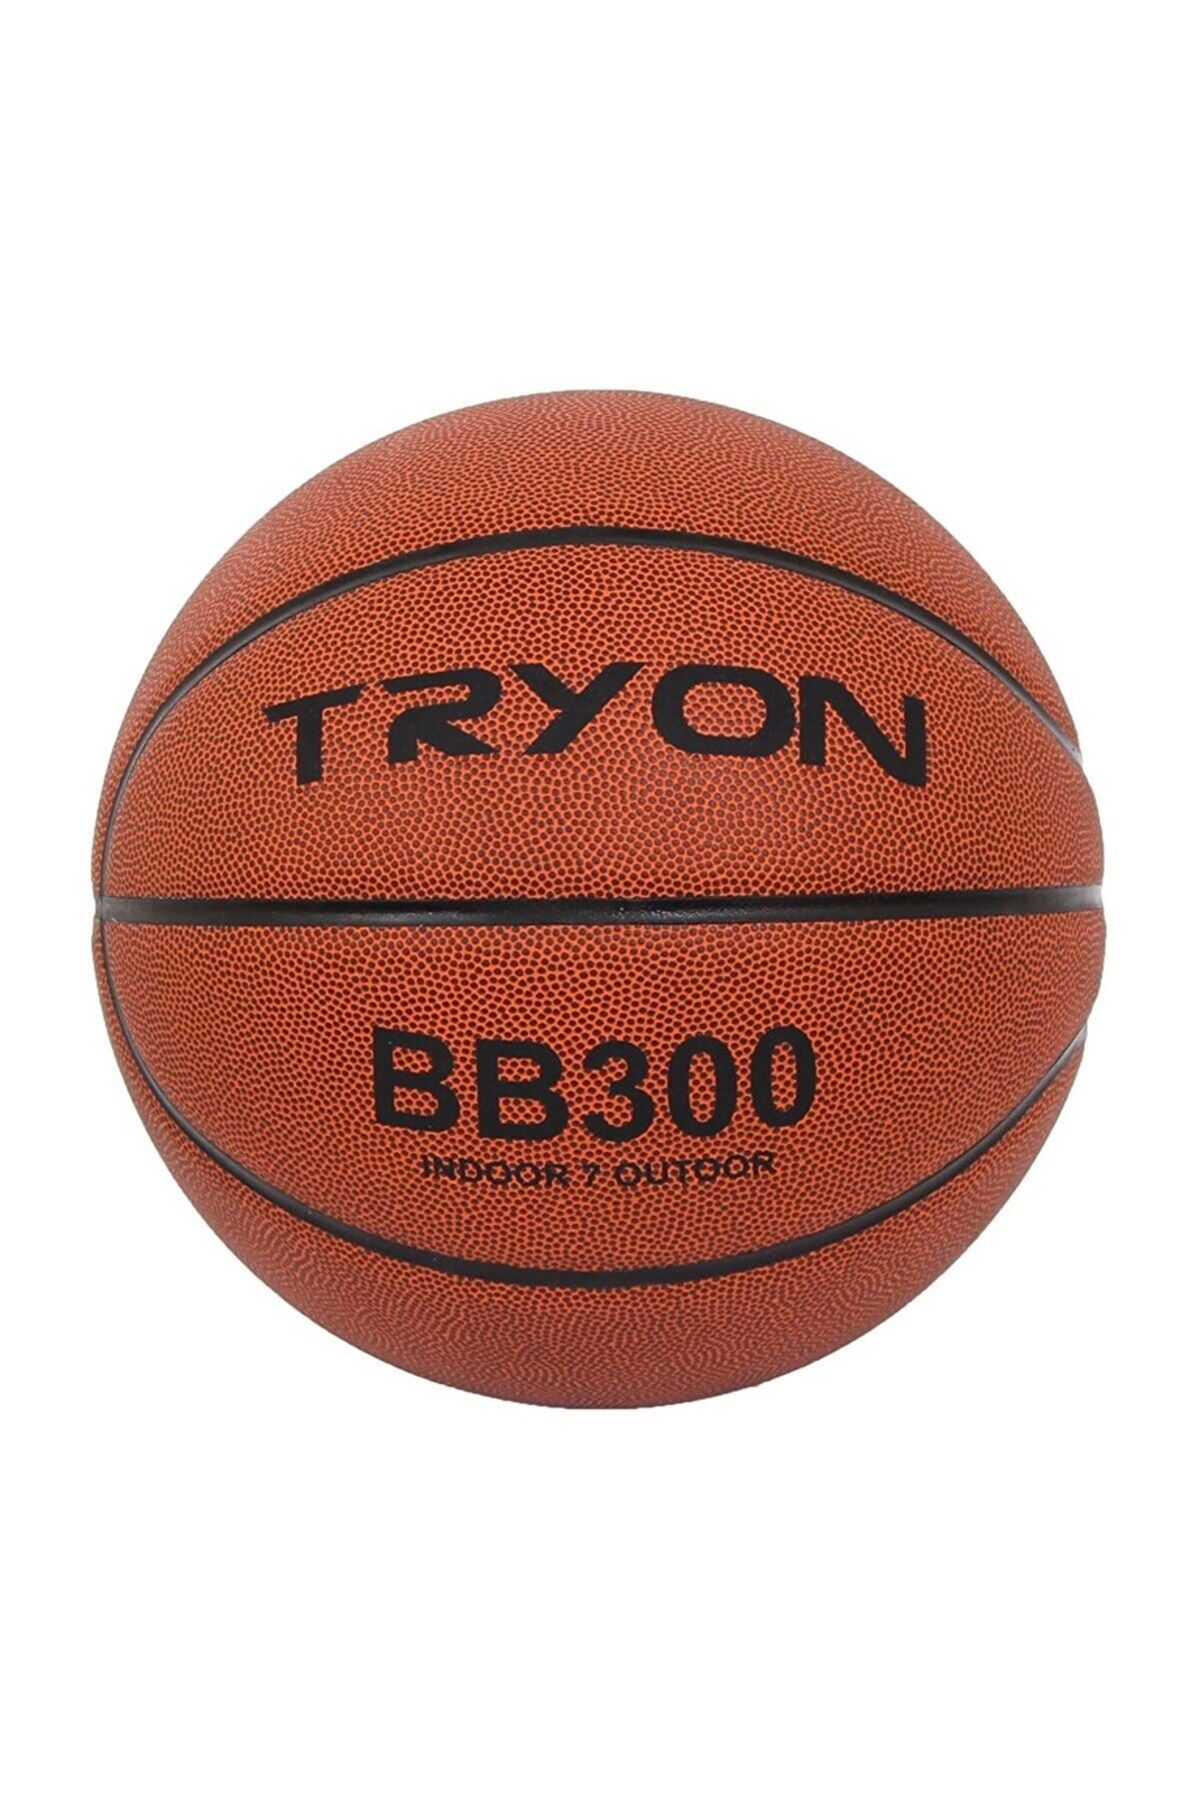 TRYON Basketbol Topu Bb300